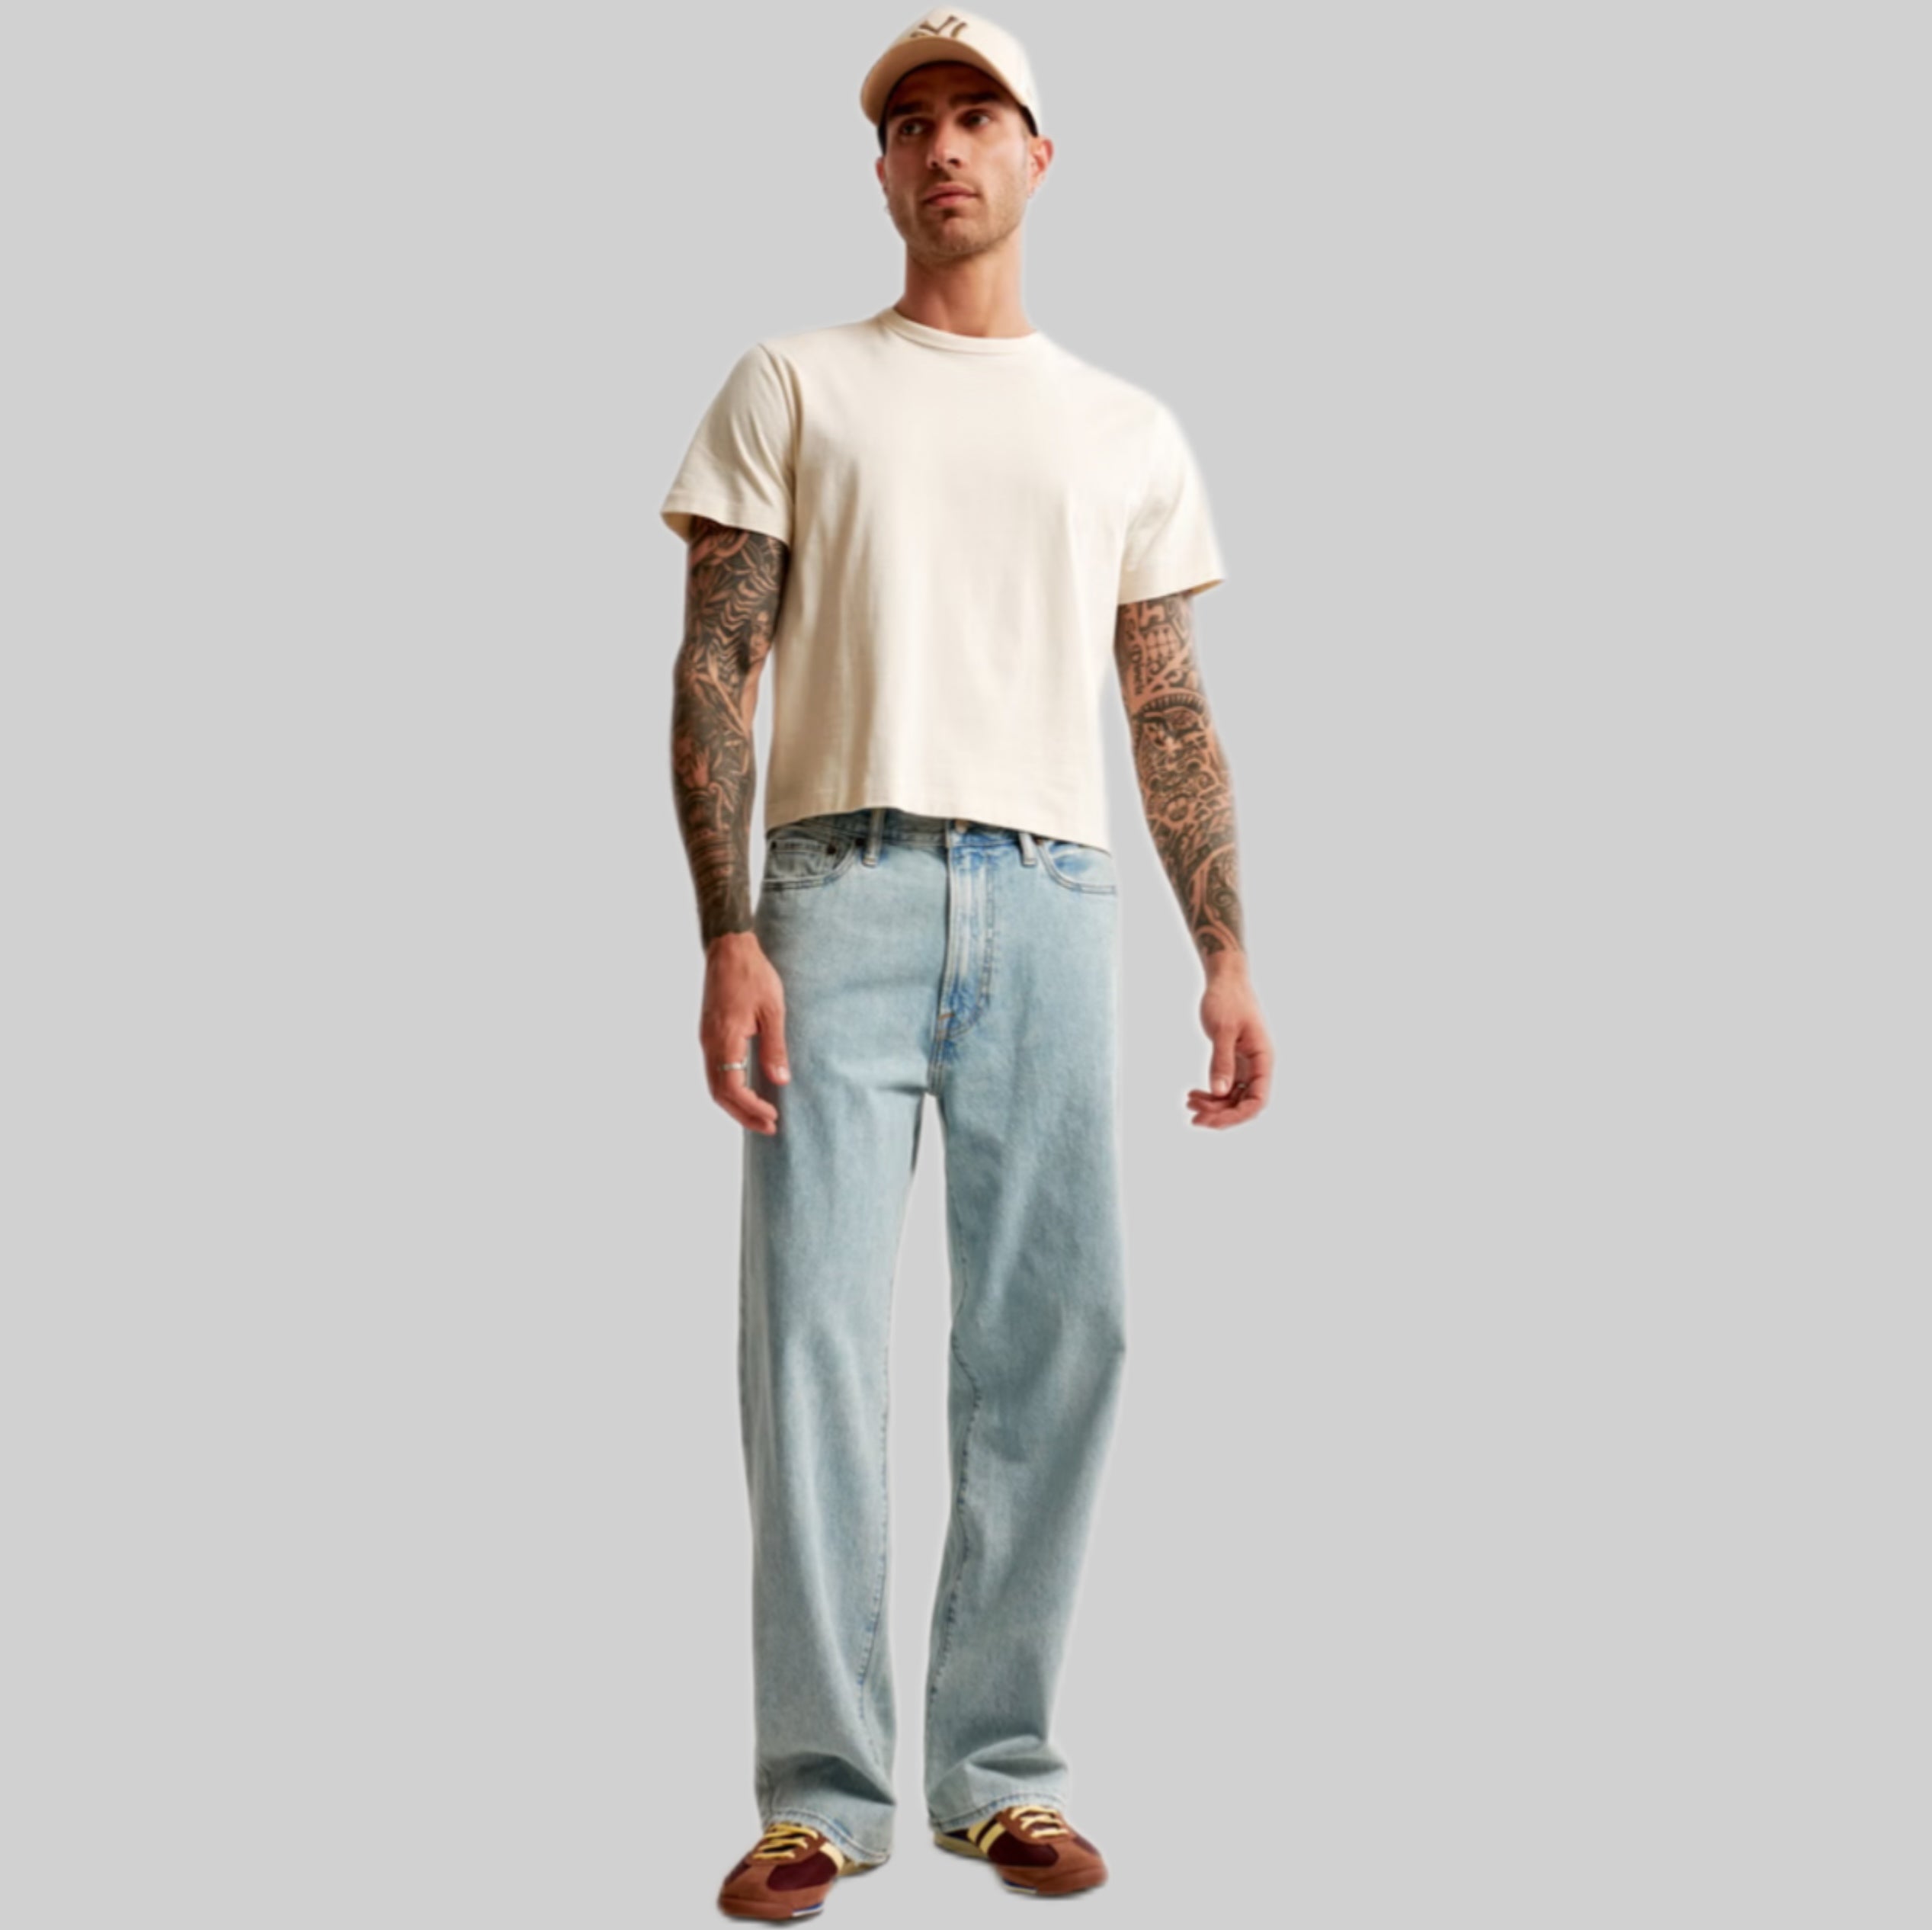 Abercrombie & Fitch jeans, men, frontside, blue, model